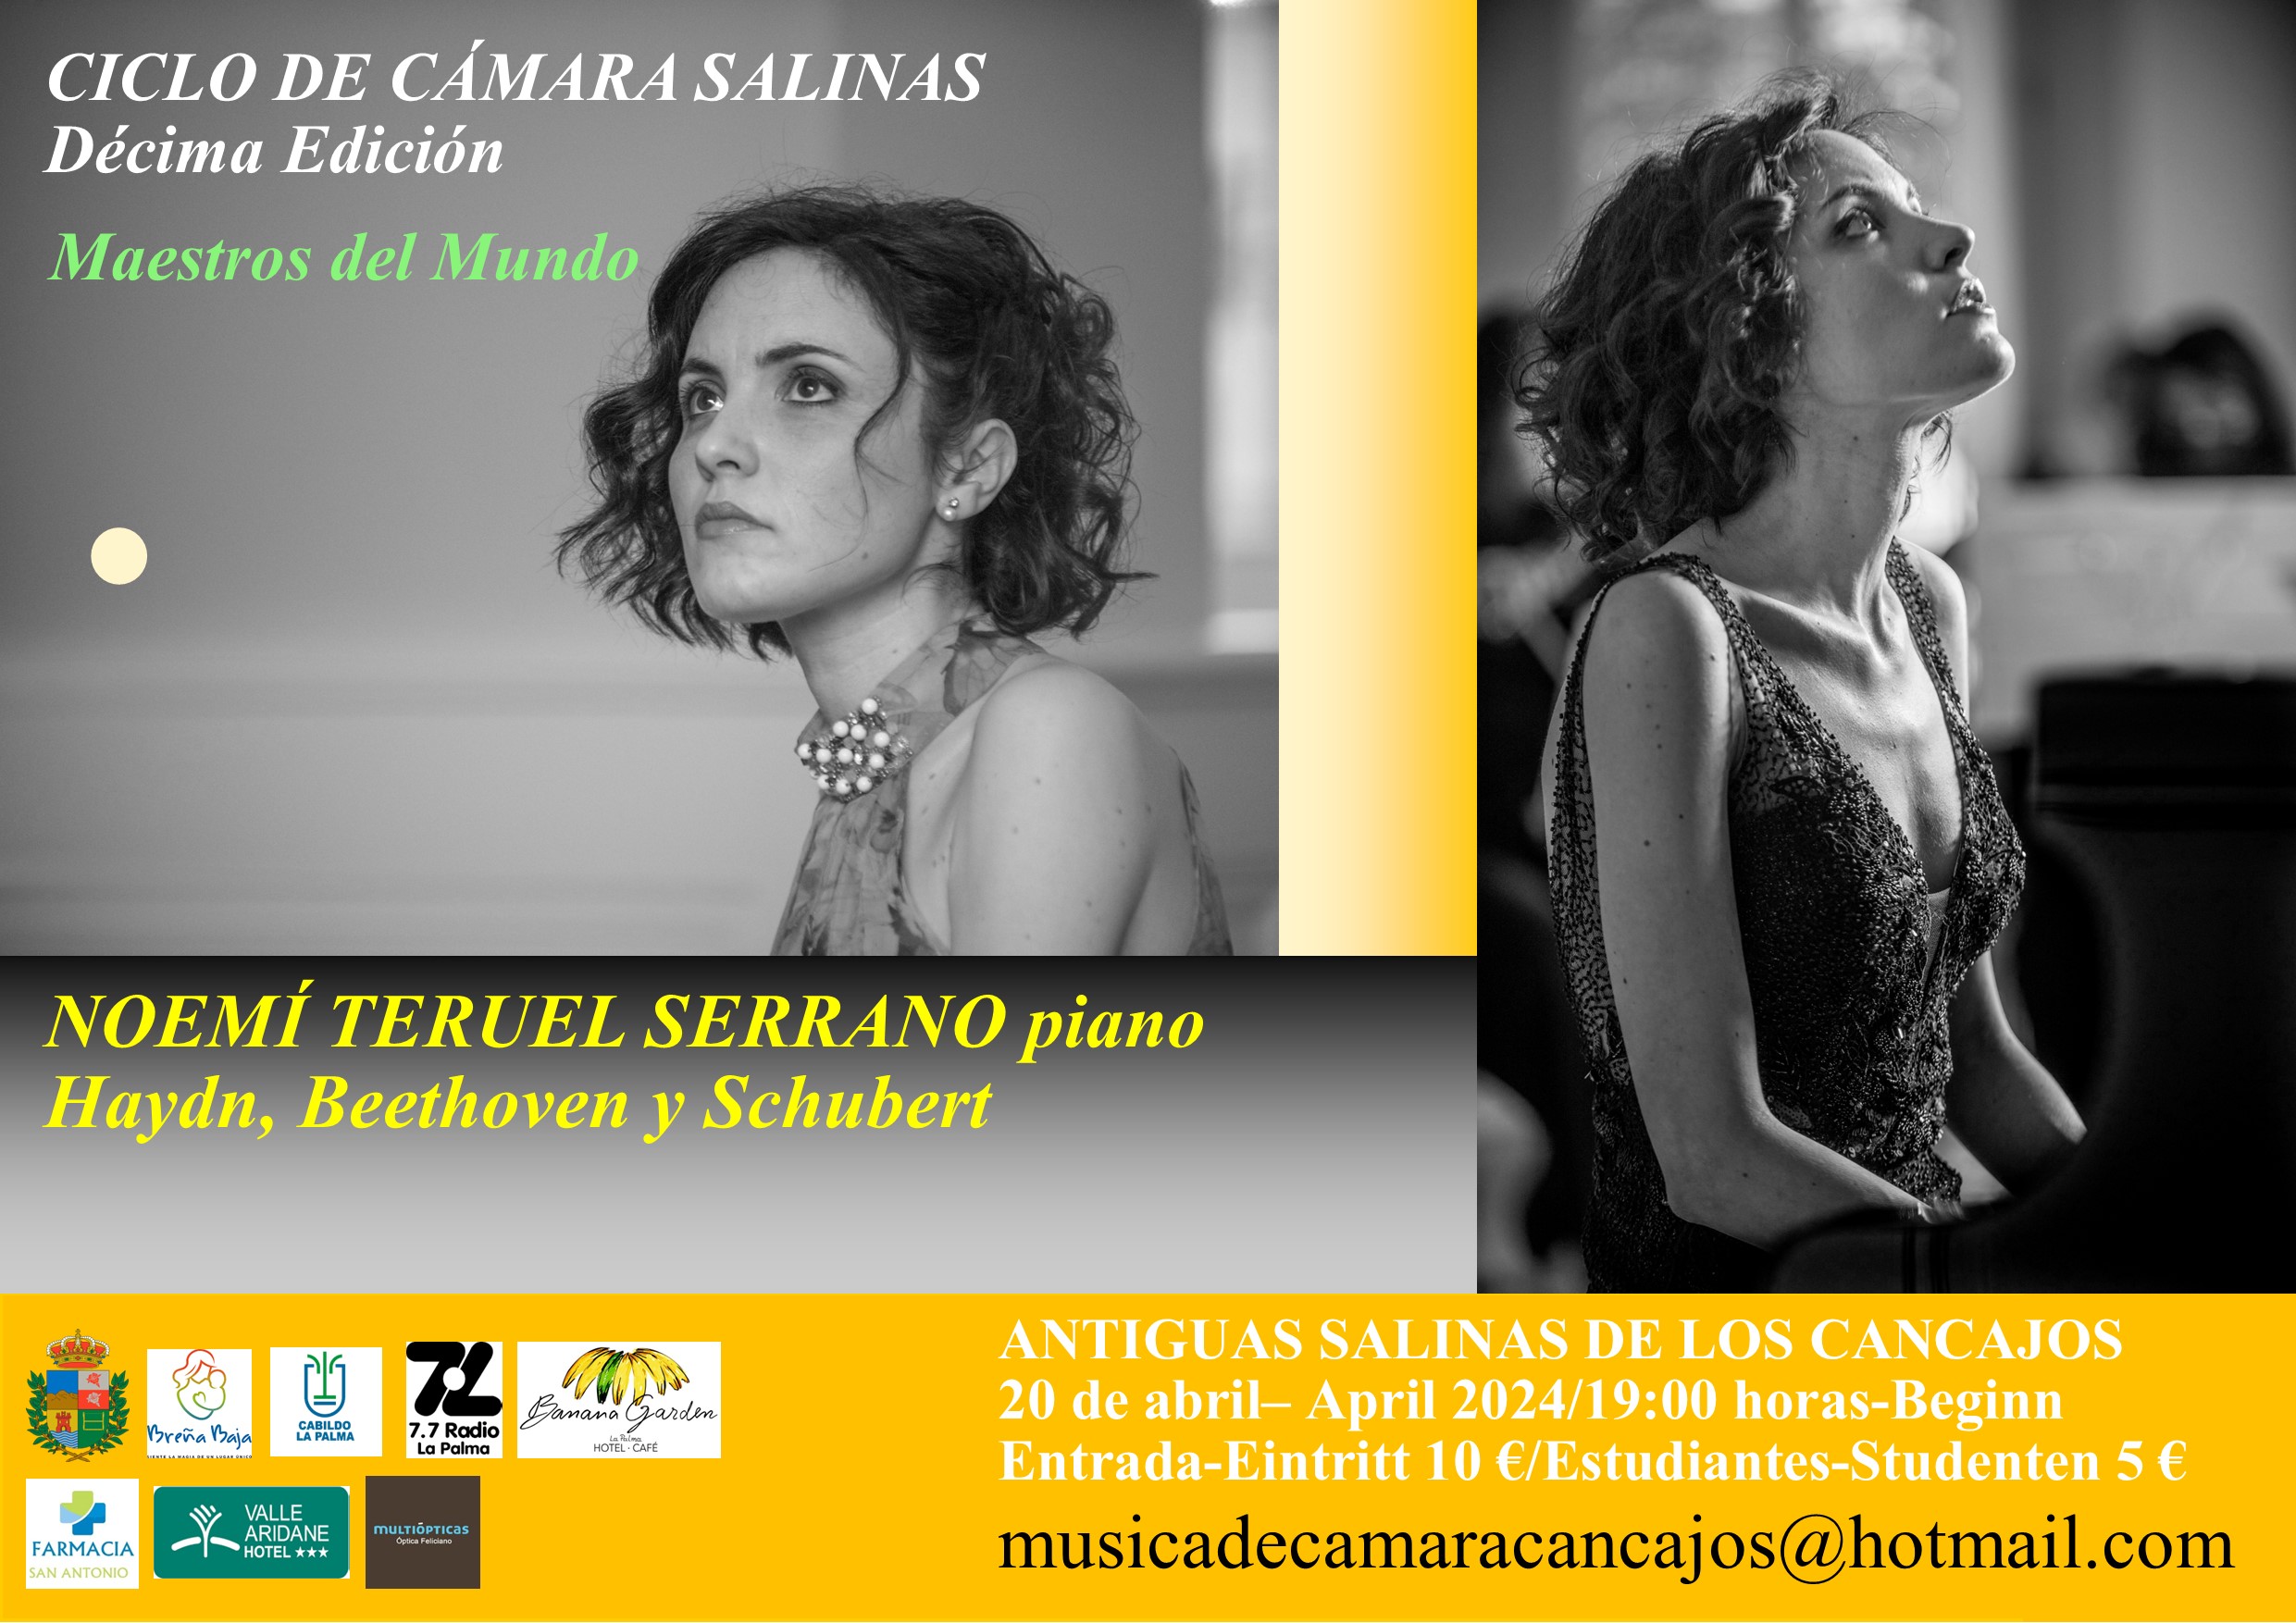 Concierto “Maestros del Mundo”, con Noemi Teruel Serrano